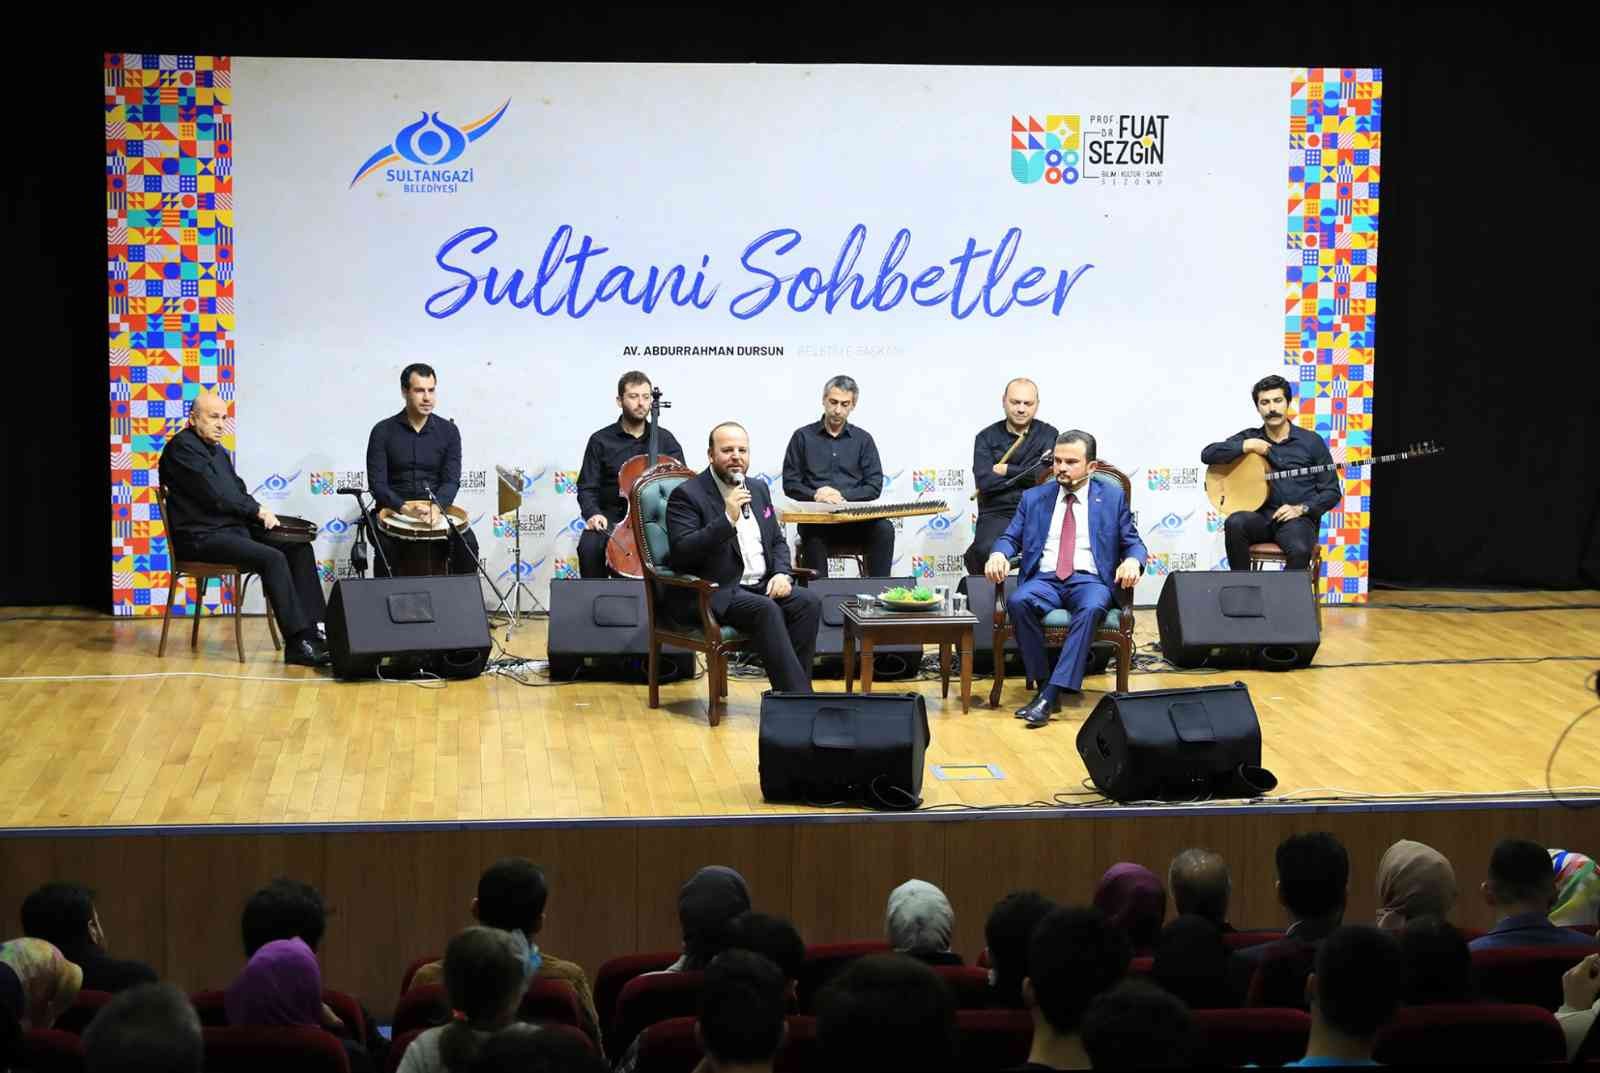 Sultani Sohbetler’in ilkinde gençlere yönelik yurt dışı proje fırsatları konuşuldu